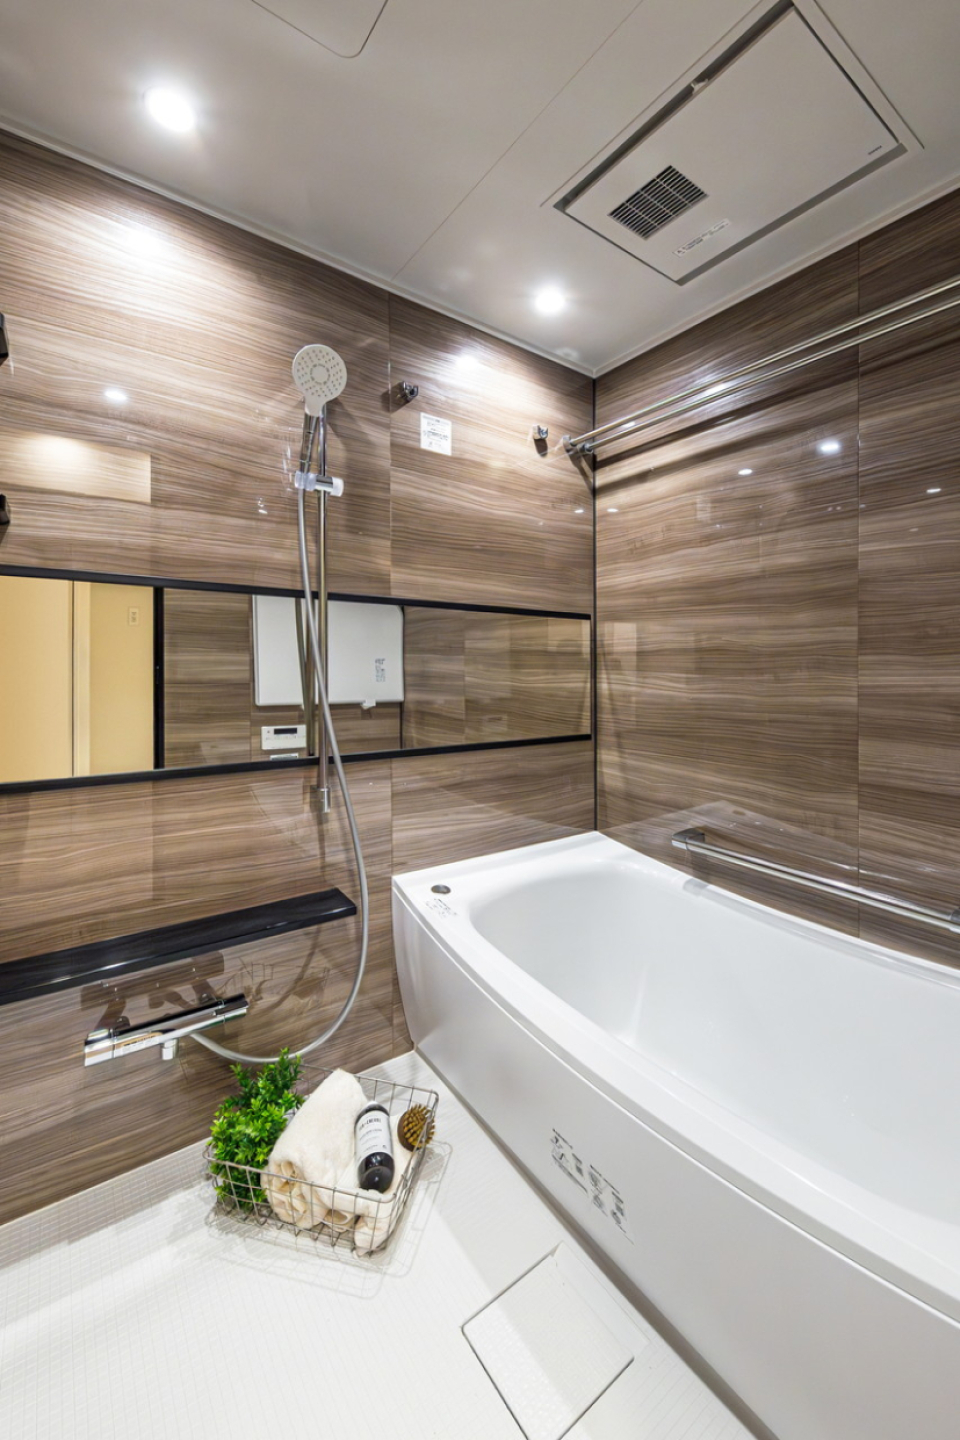 光沢感のある木目の壁が特徴の高級感のある浴室